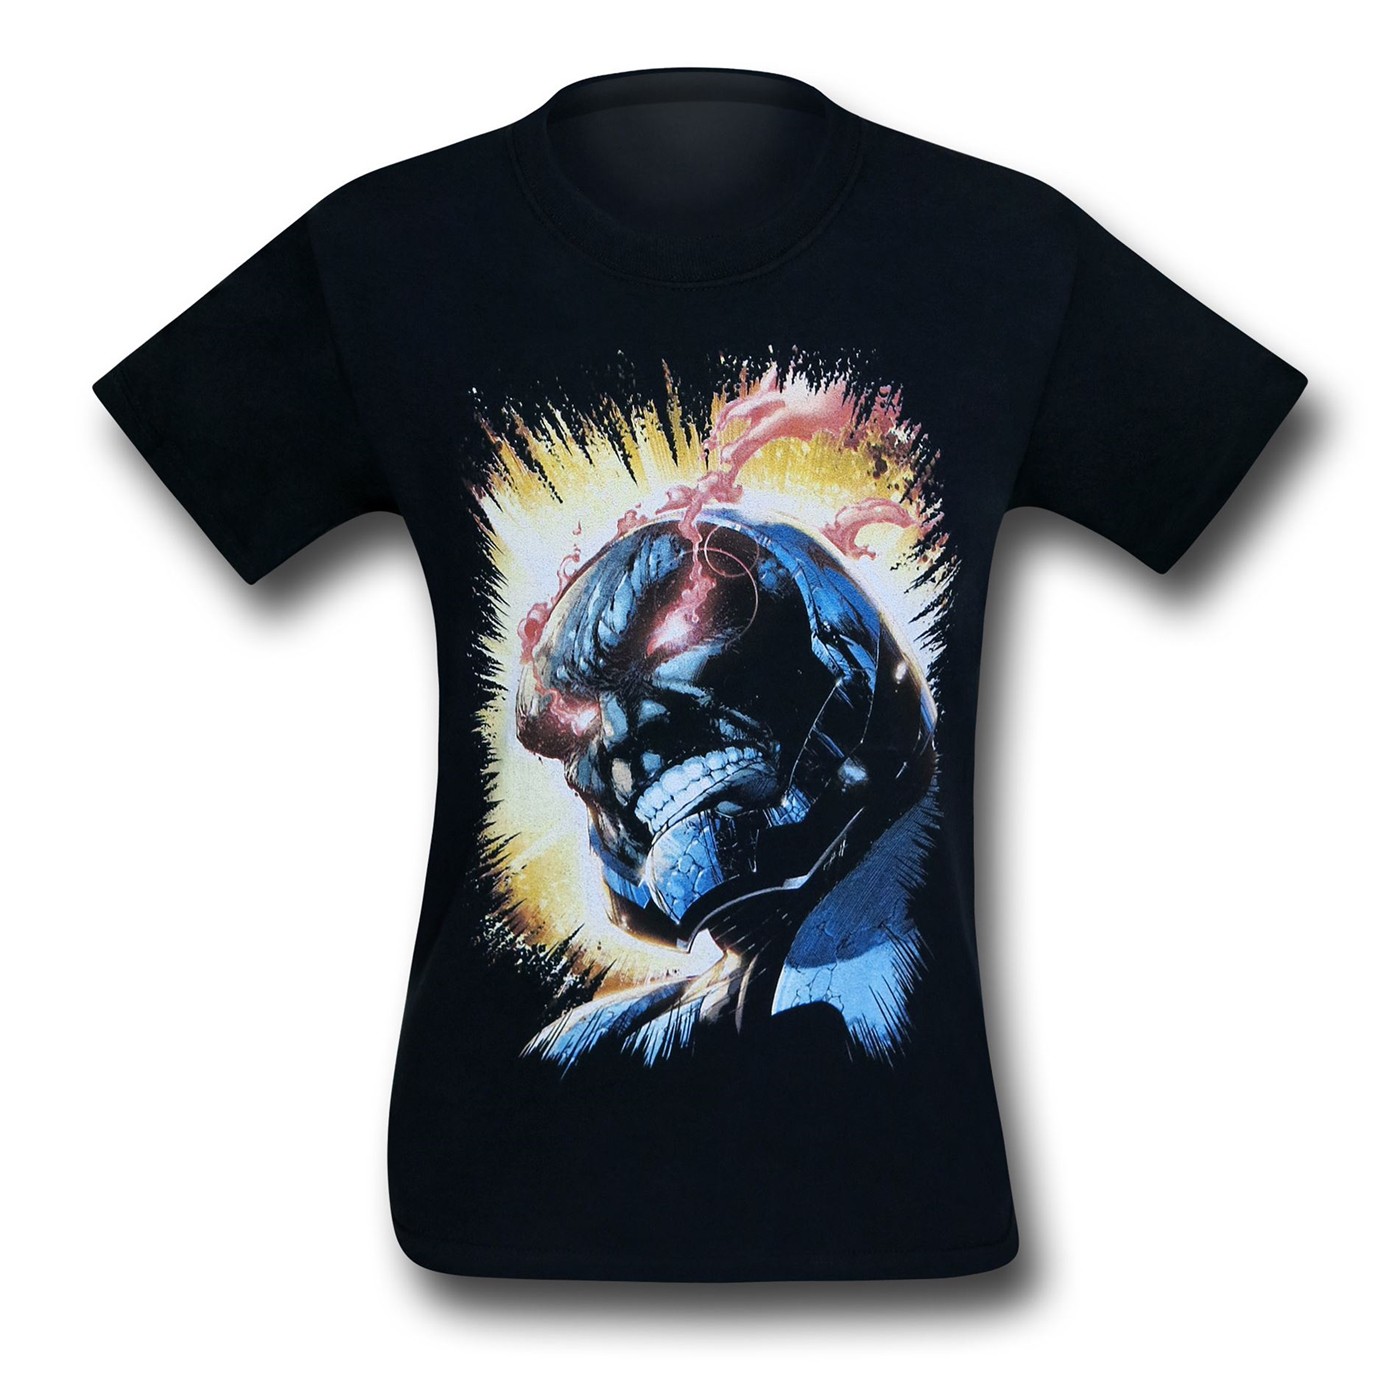 Darkseid Fiery Eyes Black T-Shirt